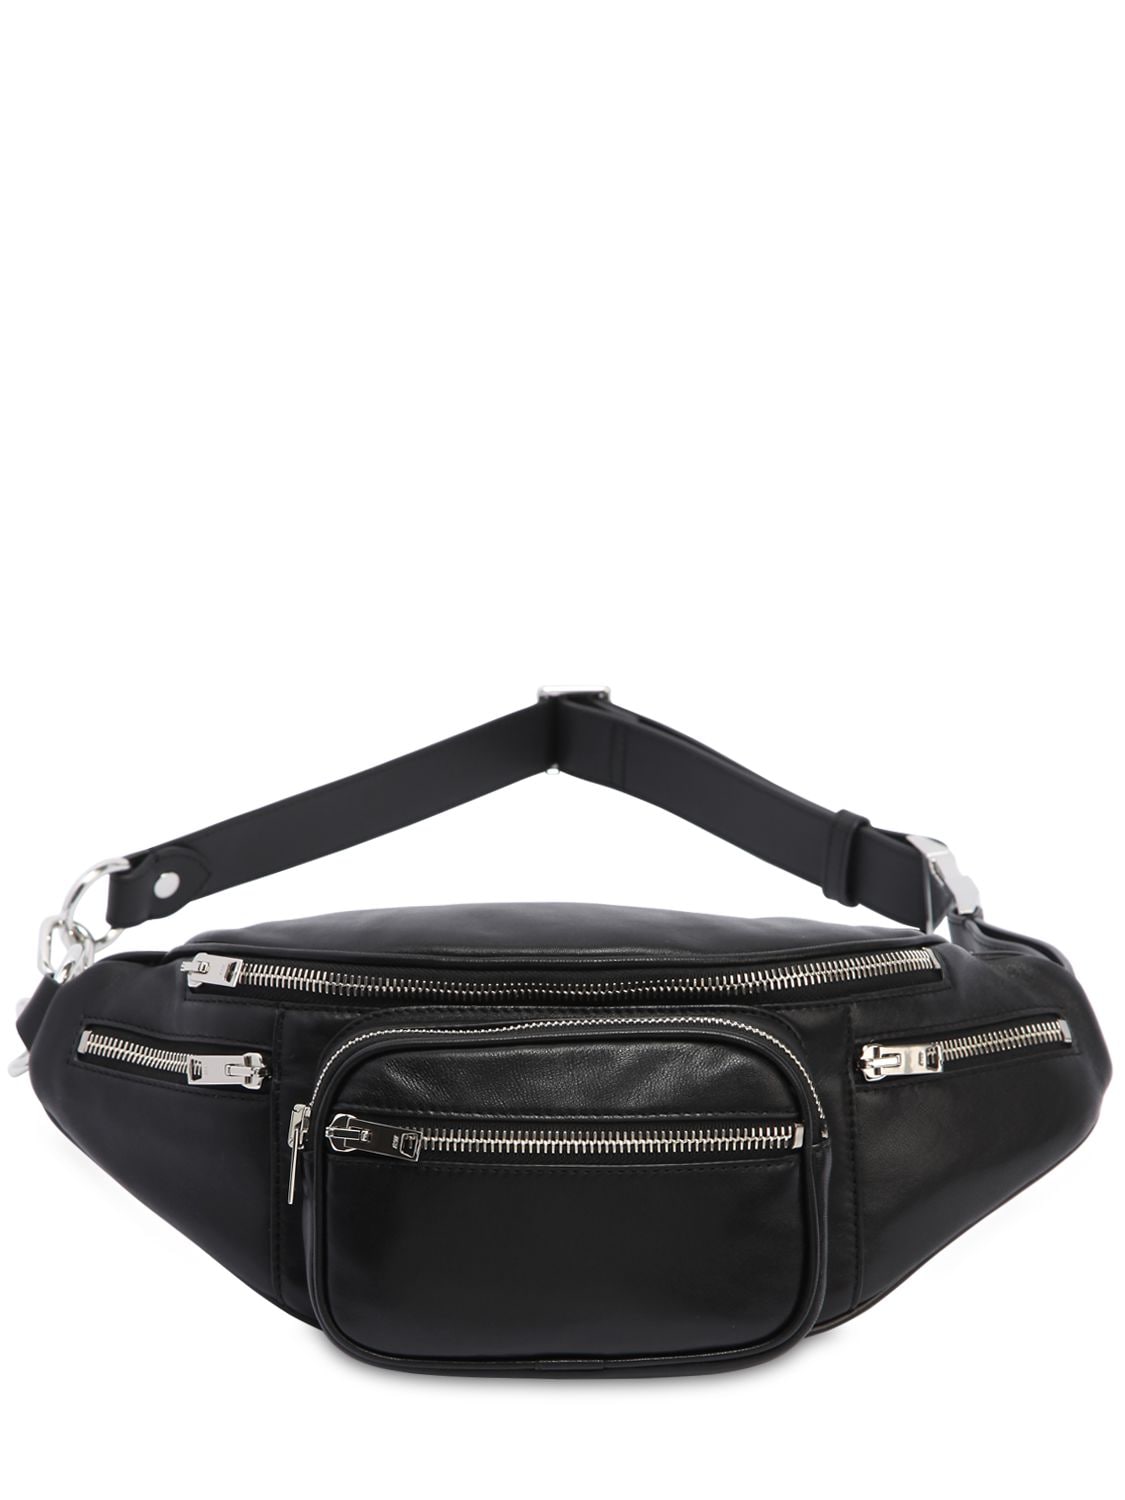 ALEXANDER WANG Belt Bags for Women | ModeSens